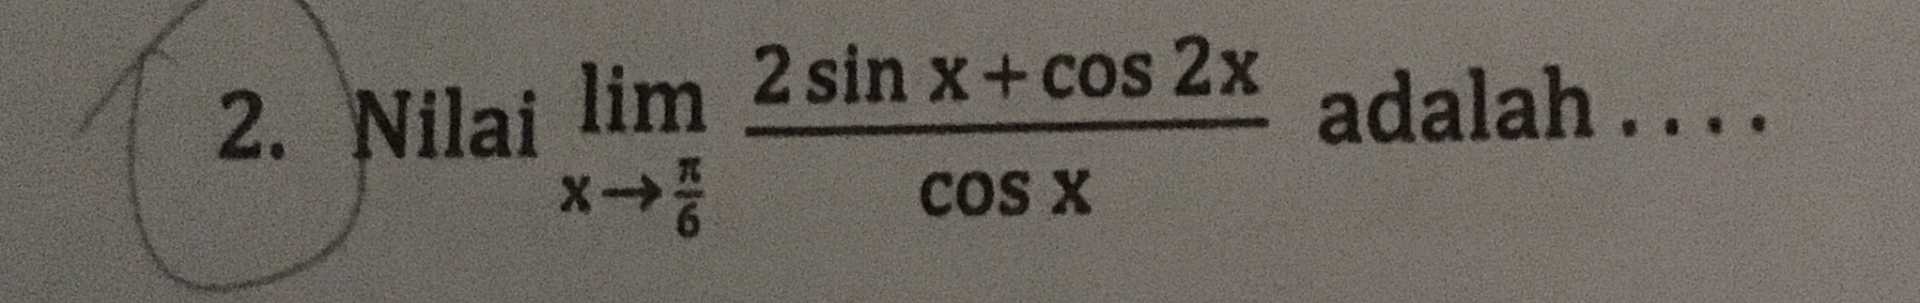 adalah .... 2. Nilai lim 2 sin x + cos2x *** COS X 